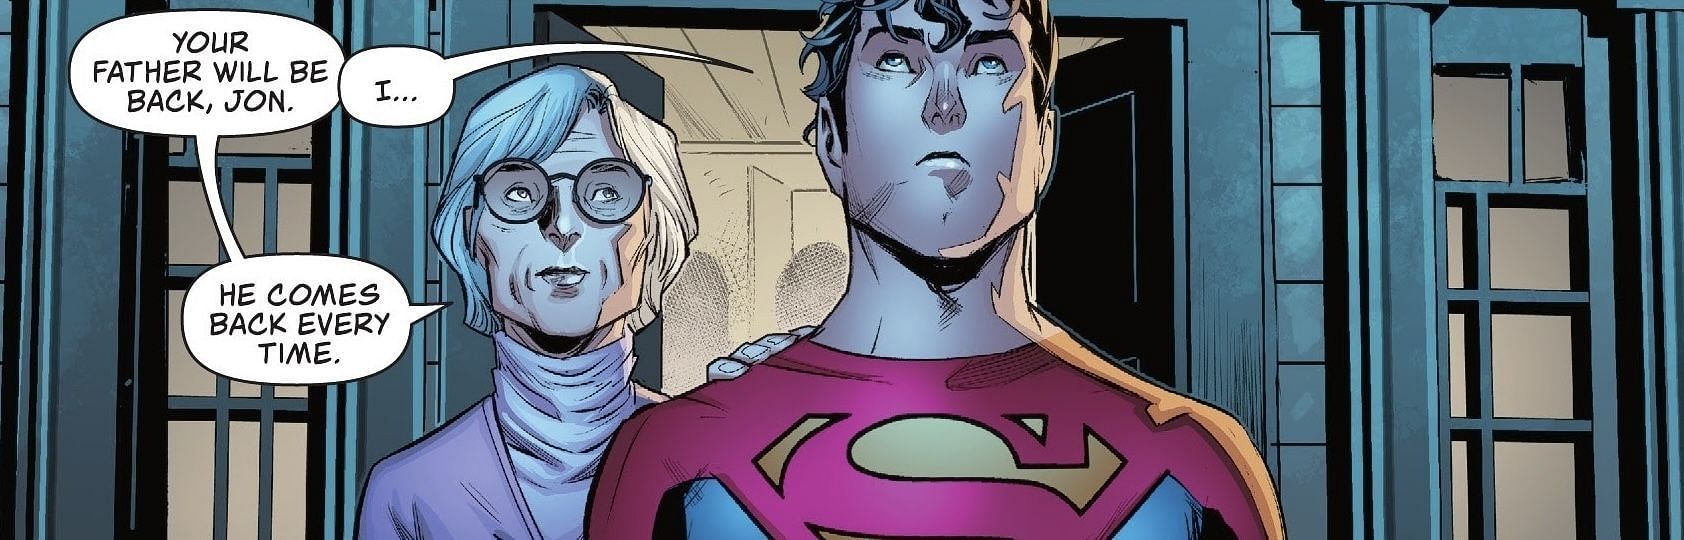 Superman:Son of Kal-El #3 (Image via DC Comics)